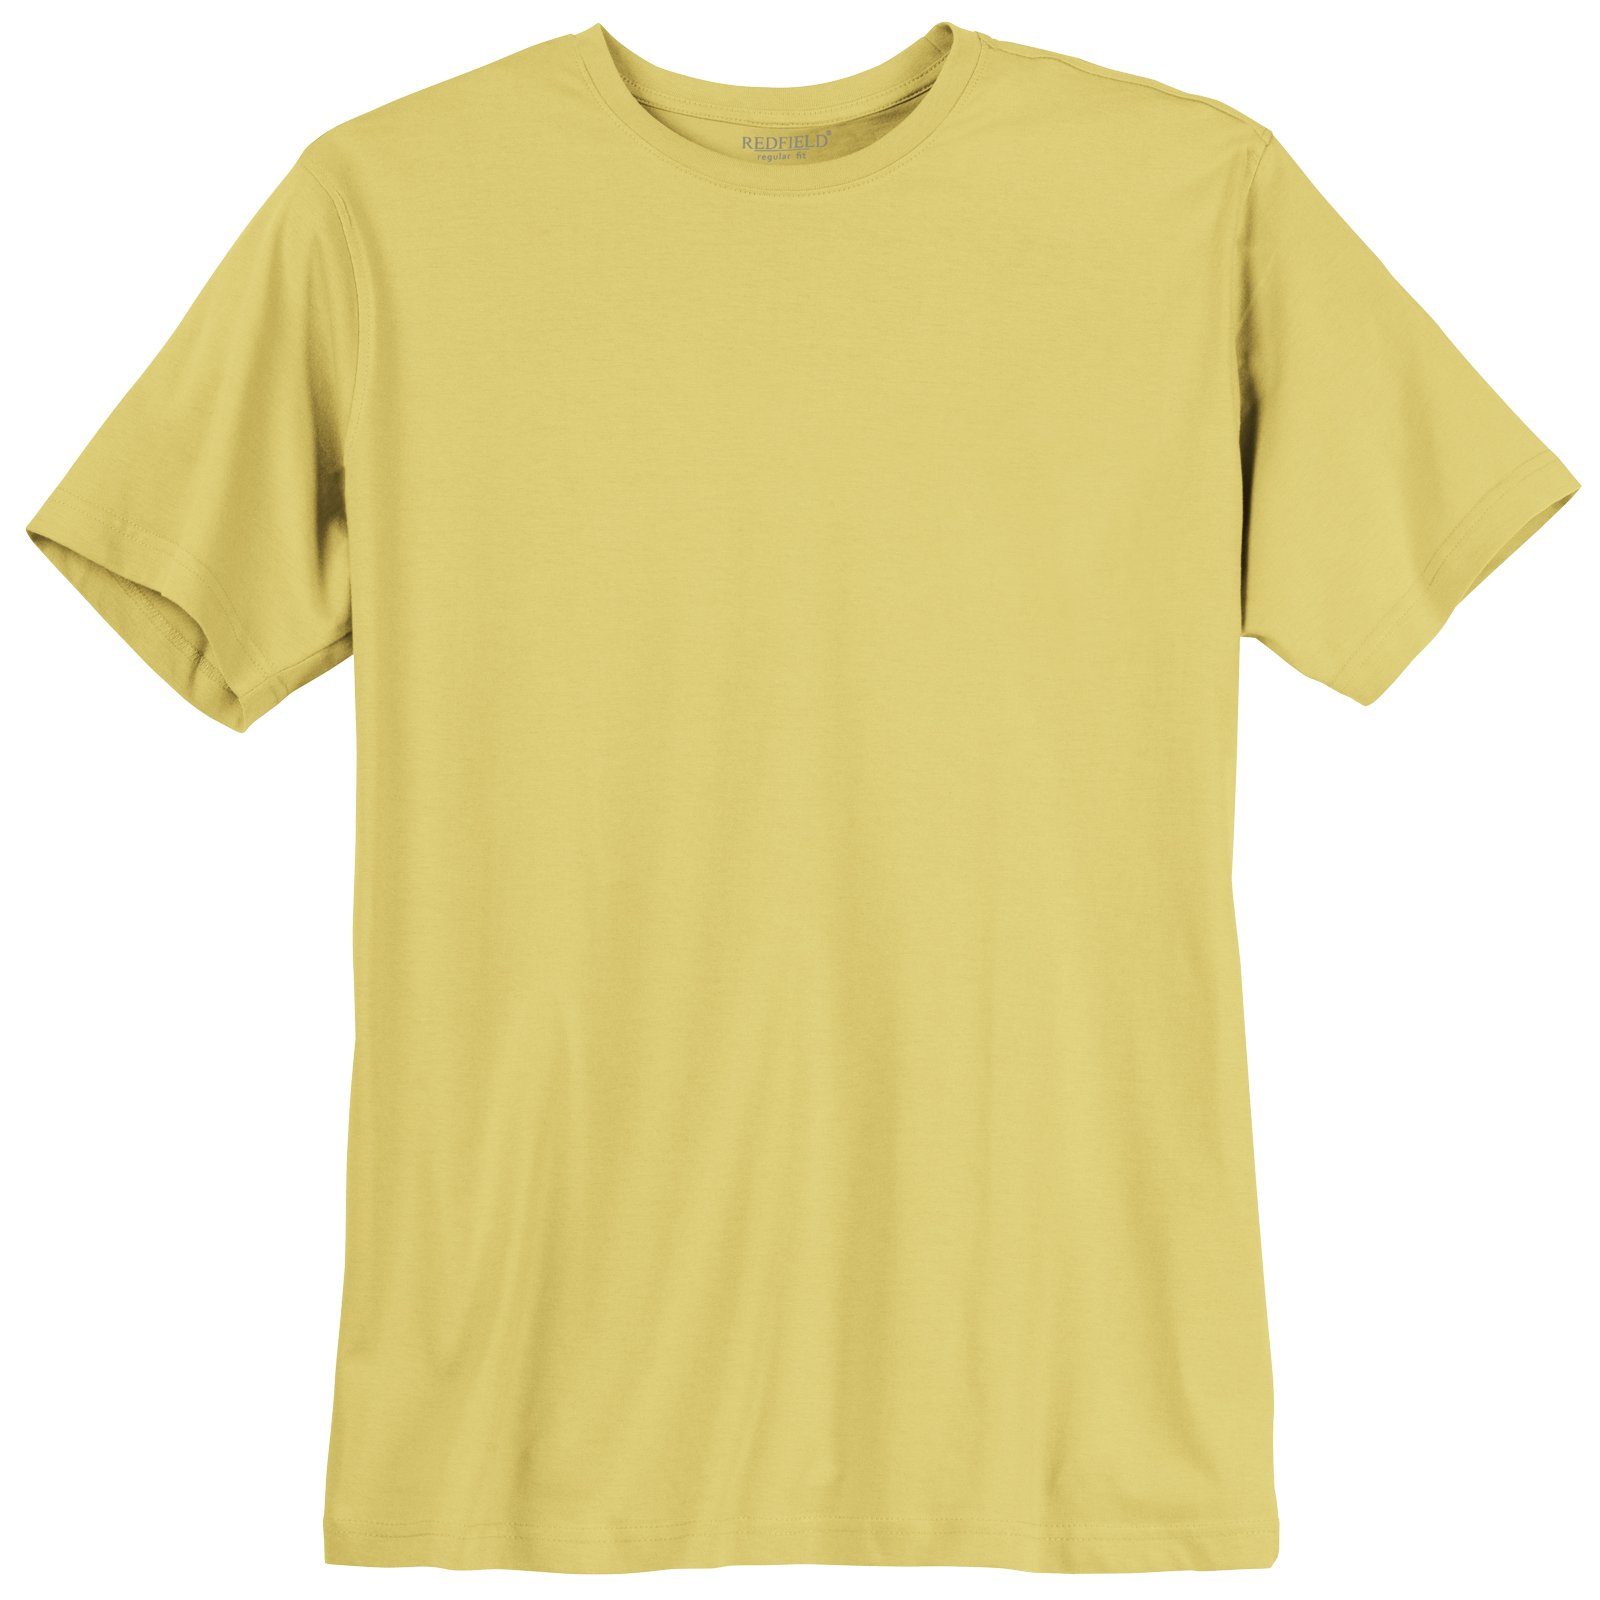 Rundhalsshirt hellgelb Größen redfield Redfield Herren T-Shirt Große Basic